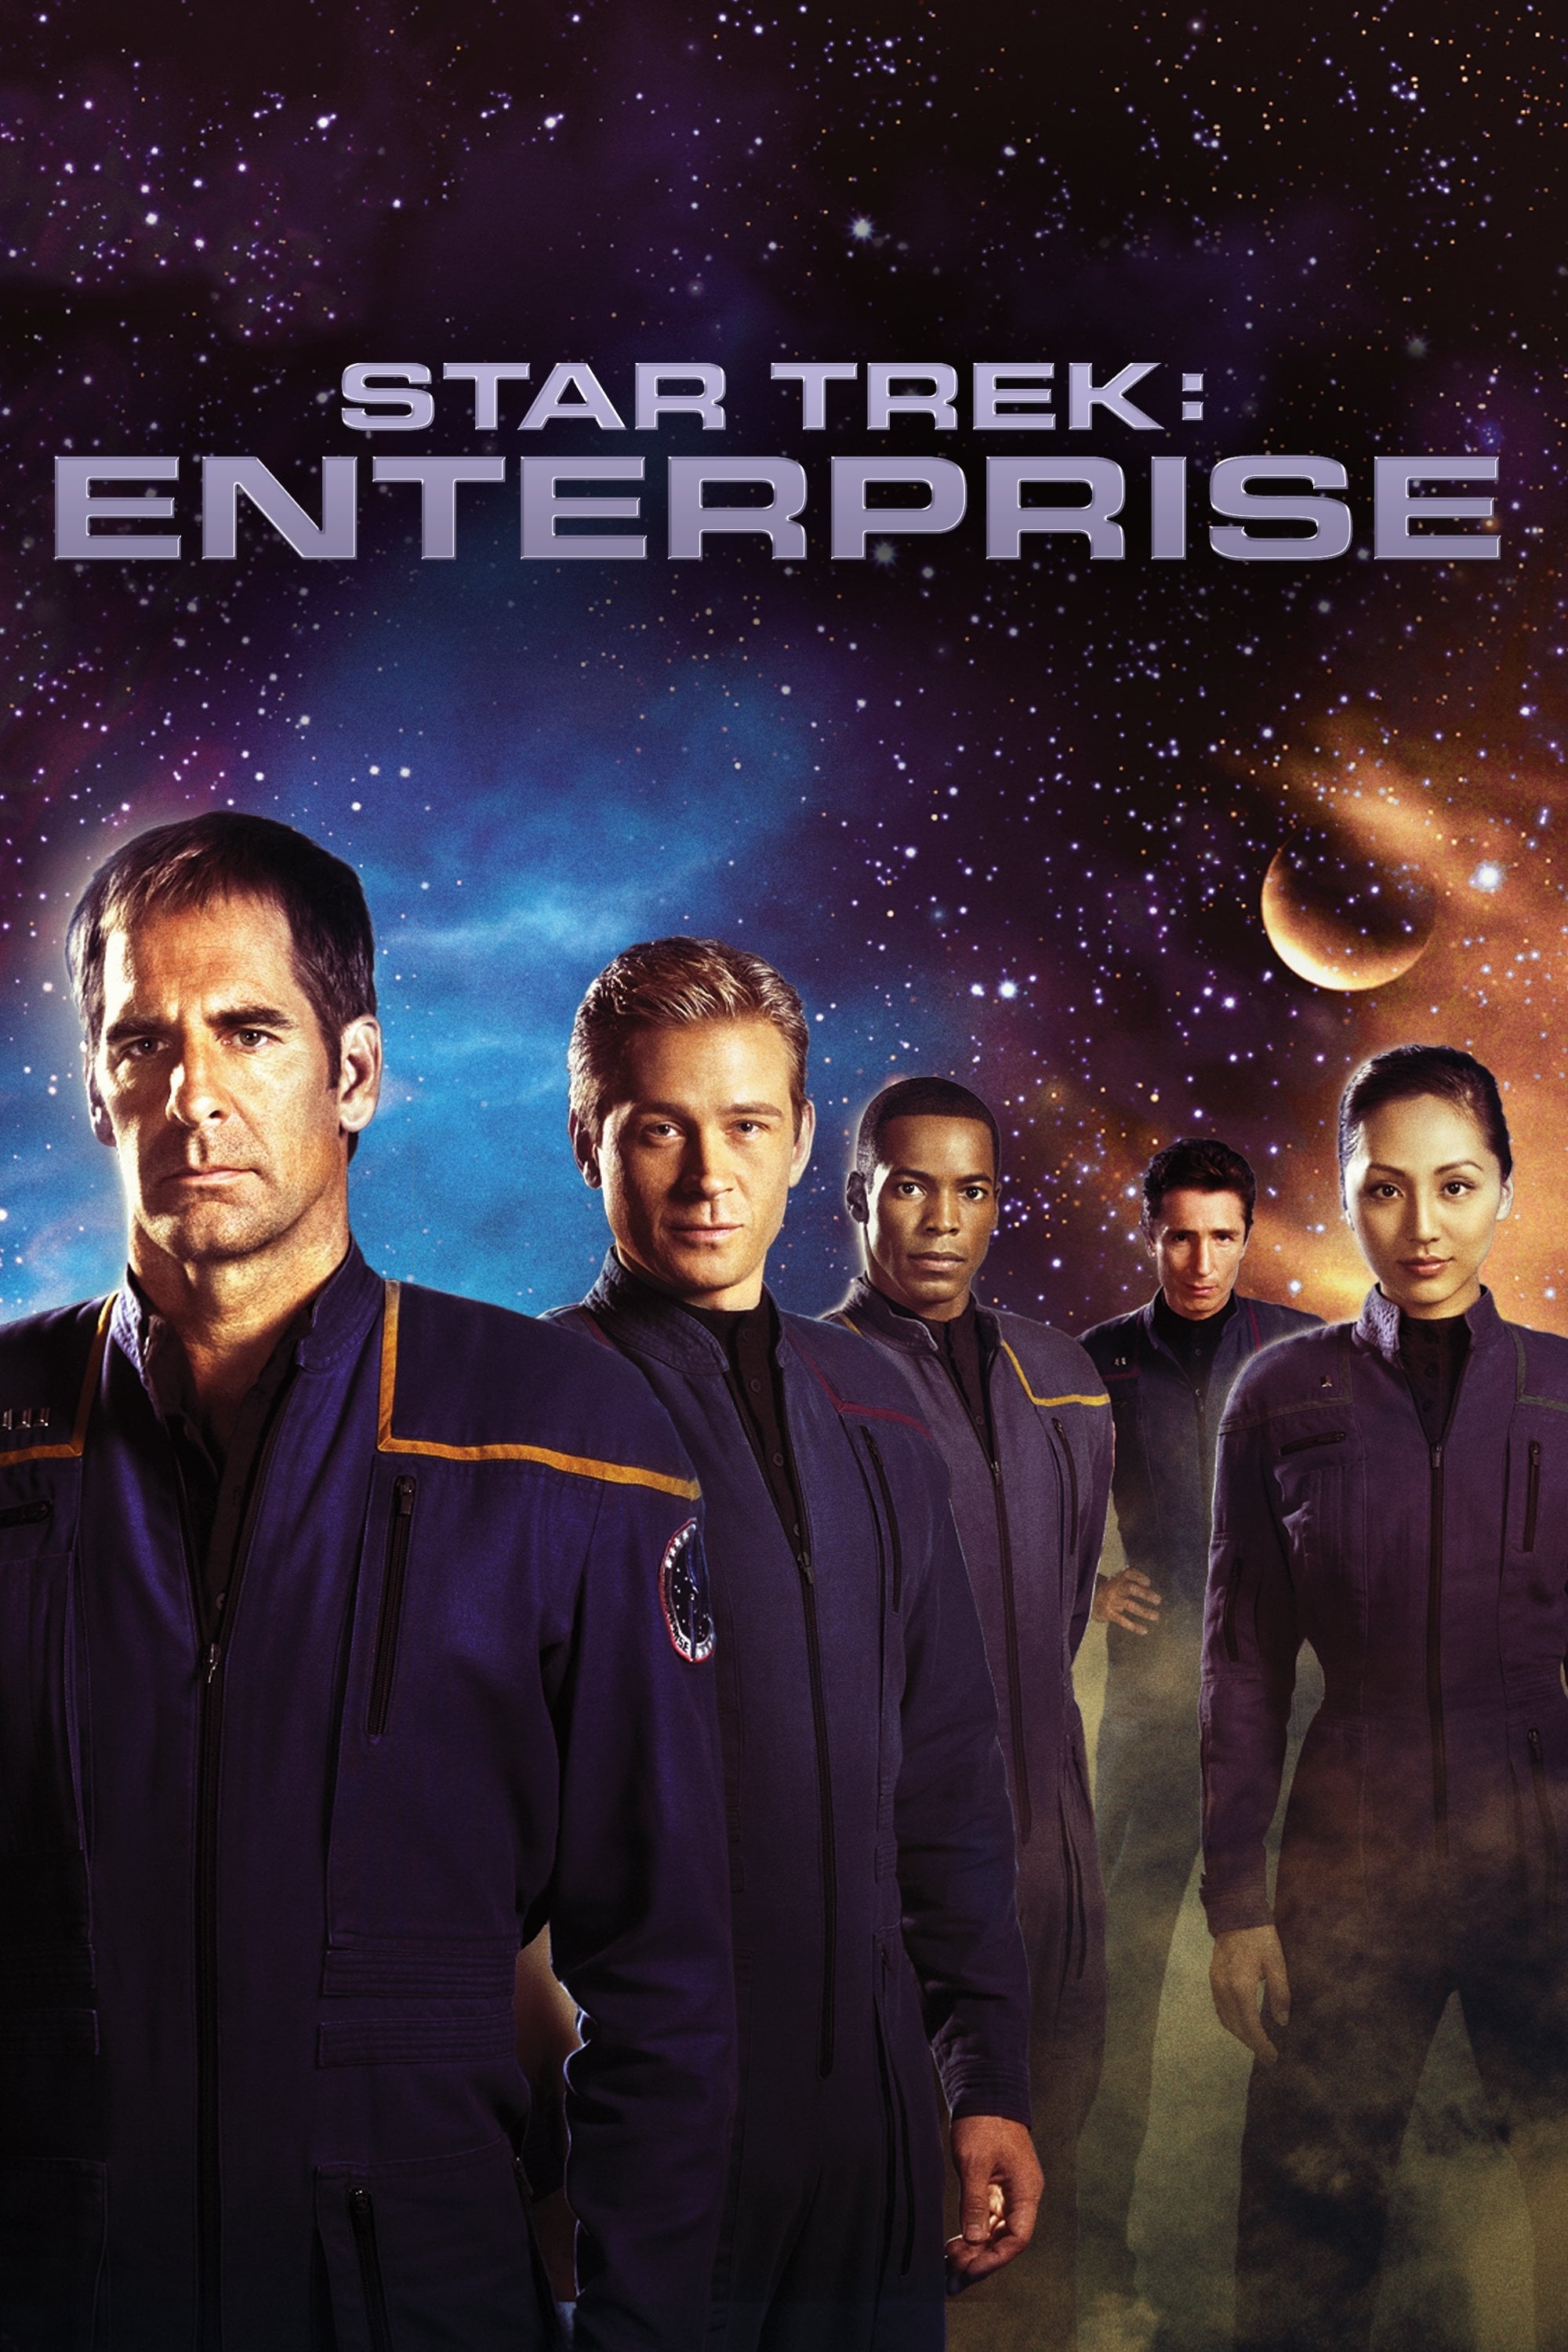 Star Trek: Enterprise (2001) Full Movie - Entertainment, Reviews, News